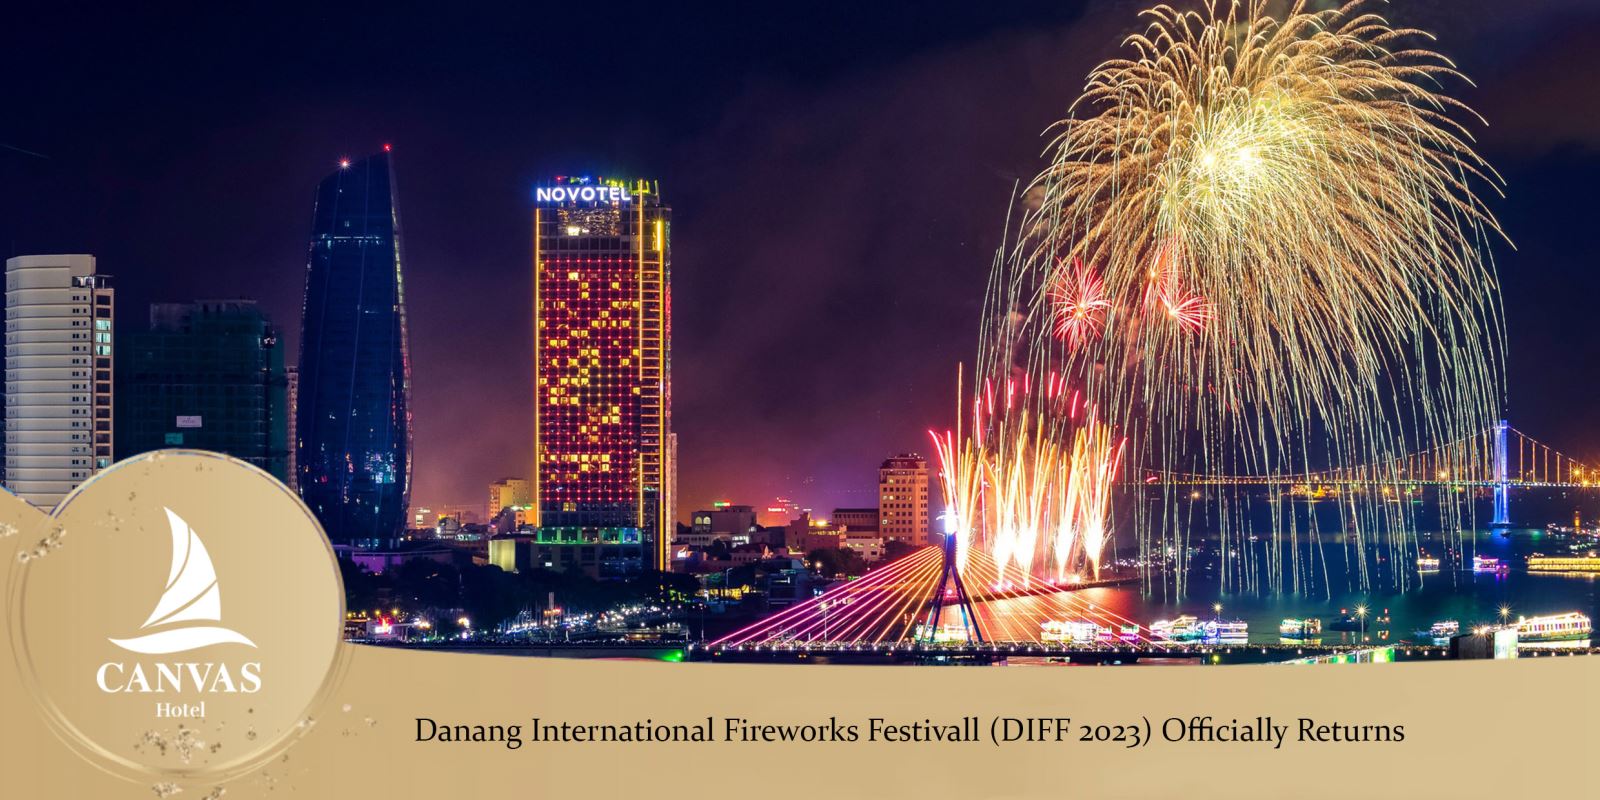 Danang International Fireworks Festivall (DIFF 2023) Officially Returns